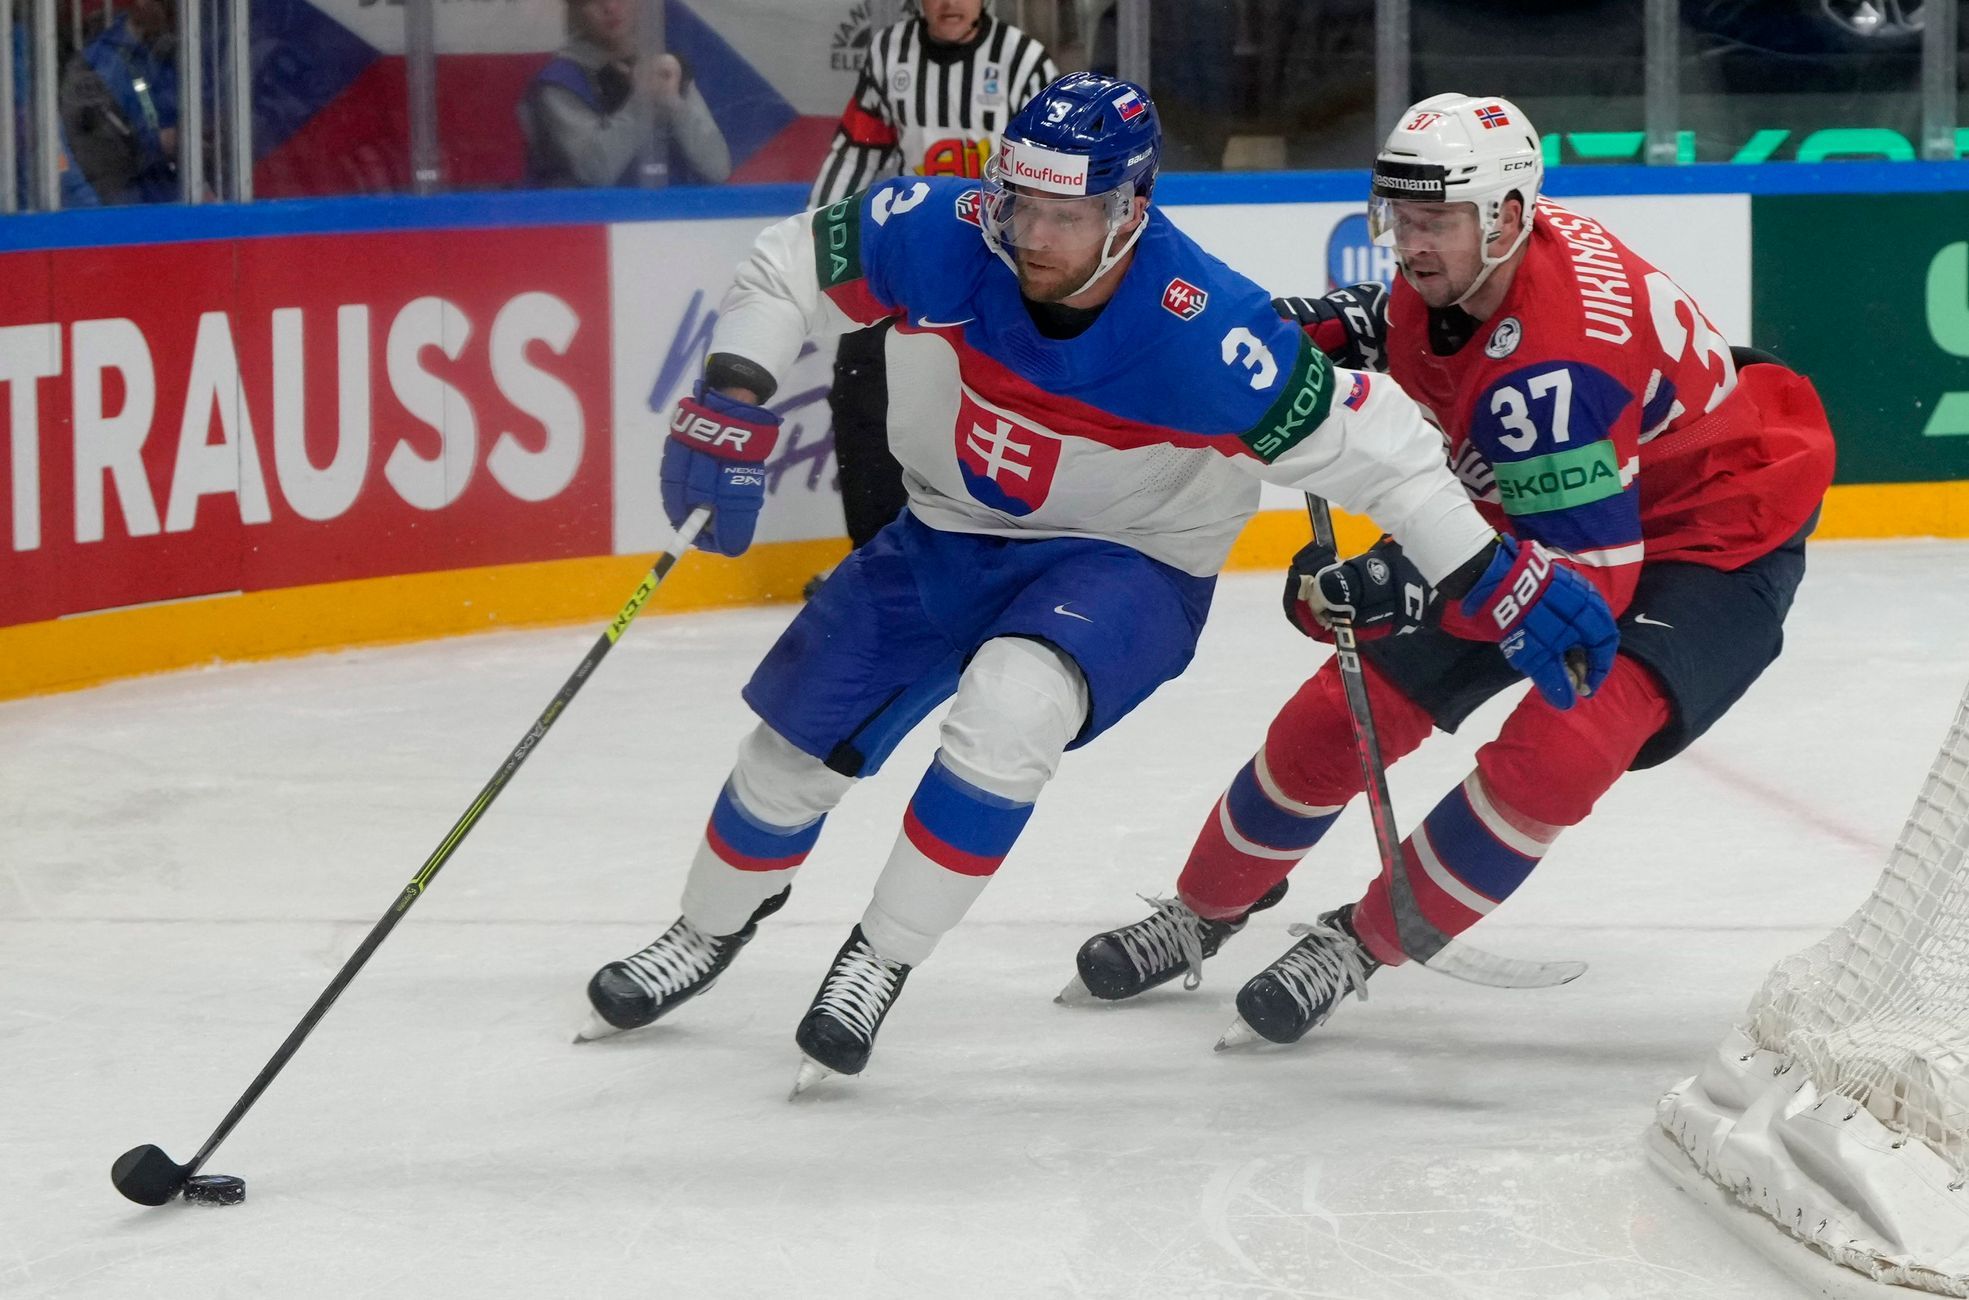 La Slovaquie est restée dans le match, maintenant elle encouragera la Suisse contre sa Lettonie natale